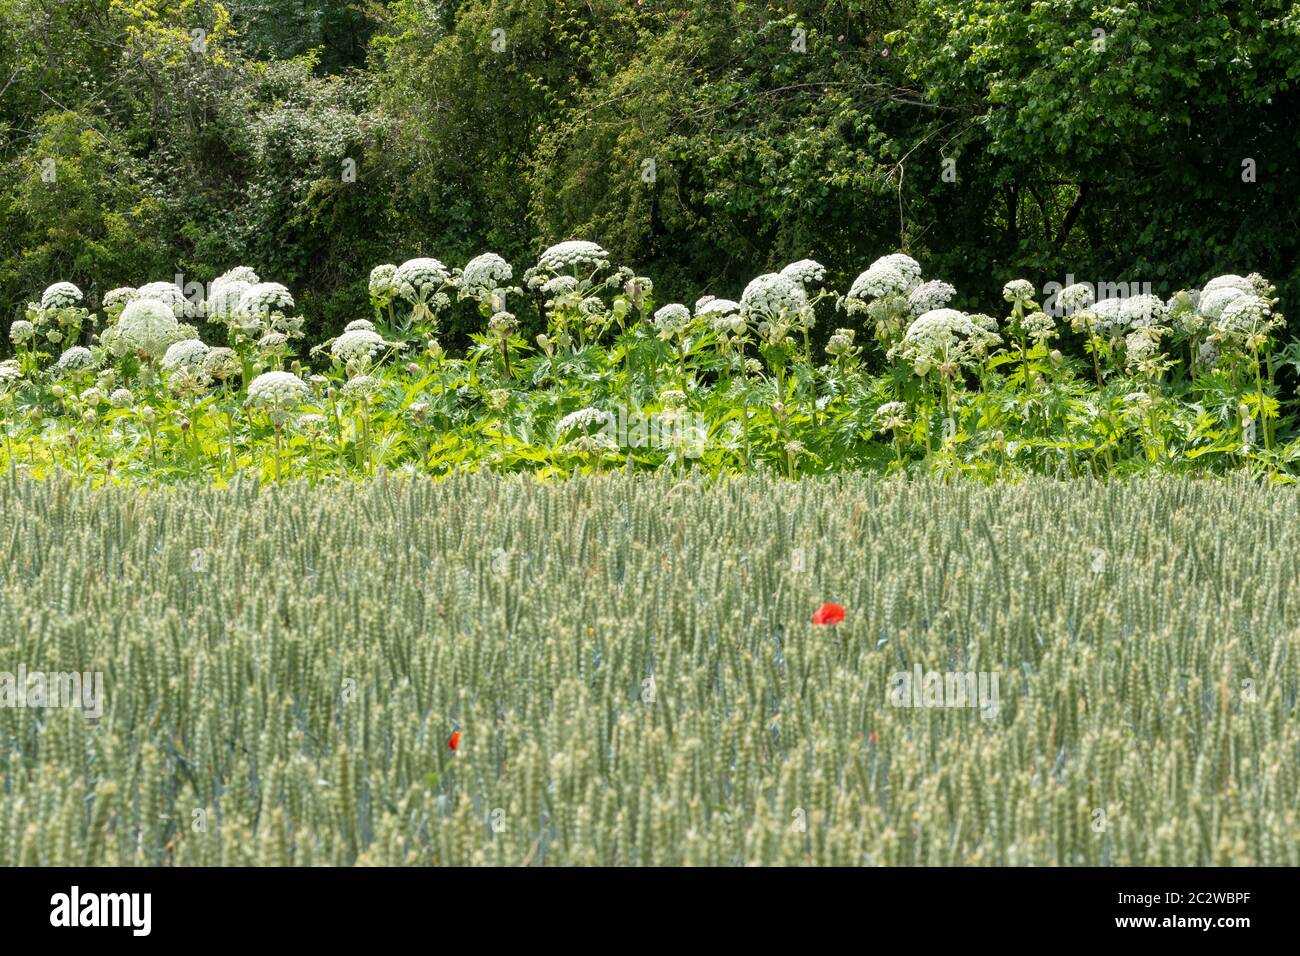 L'heracleum mantegazzianum, une grande plante à fleurs envahissantes au Royaume-Uni, pousse le long d'une bordure de champ Banque D'Images